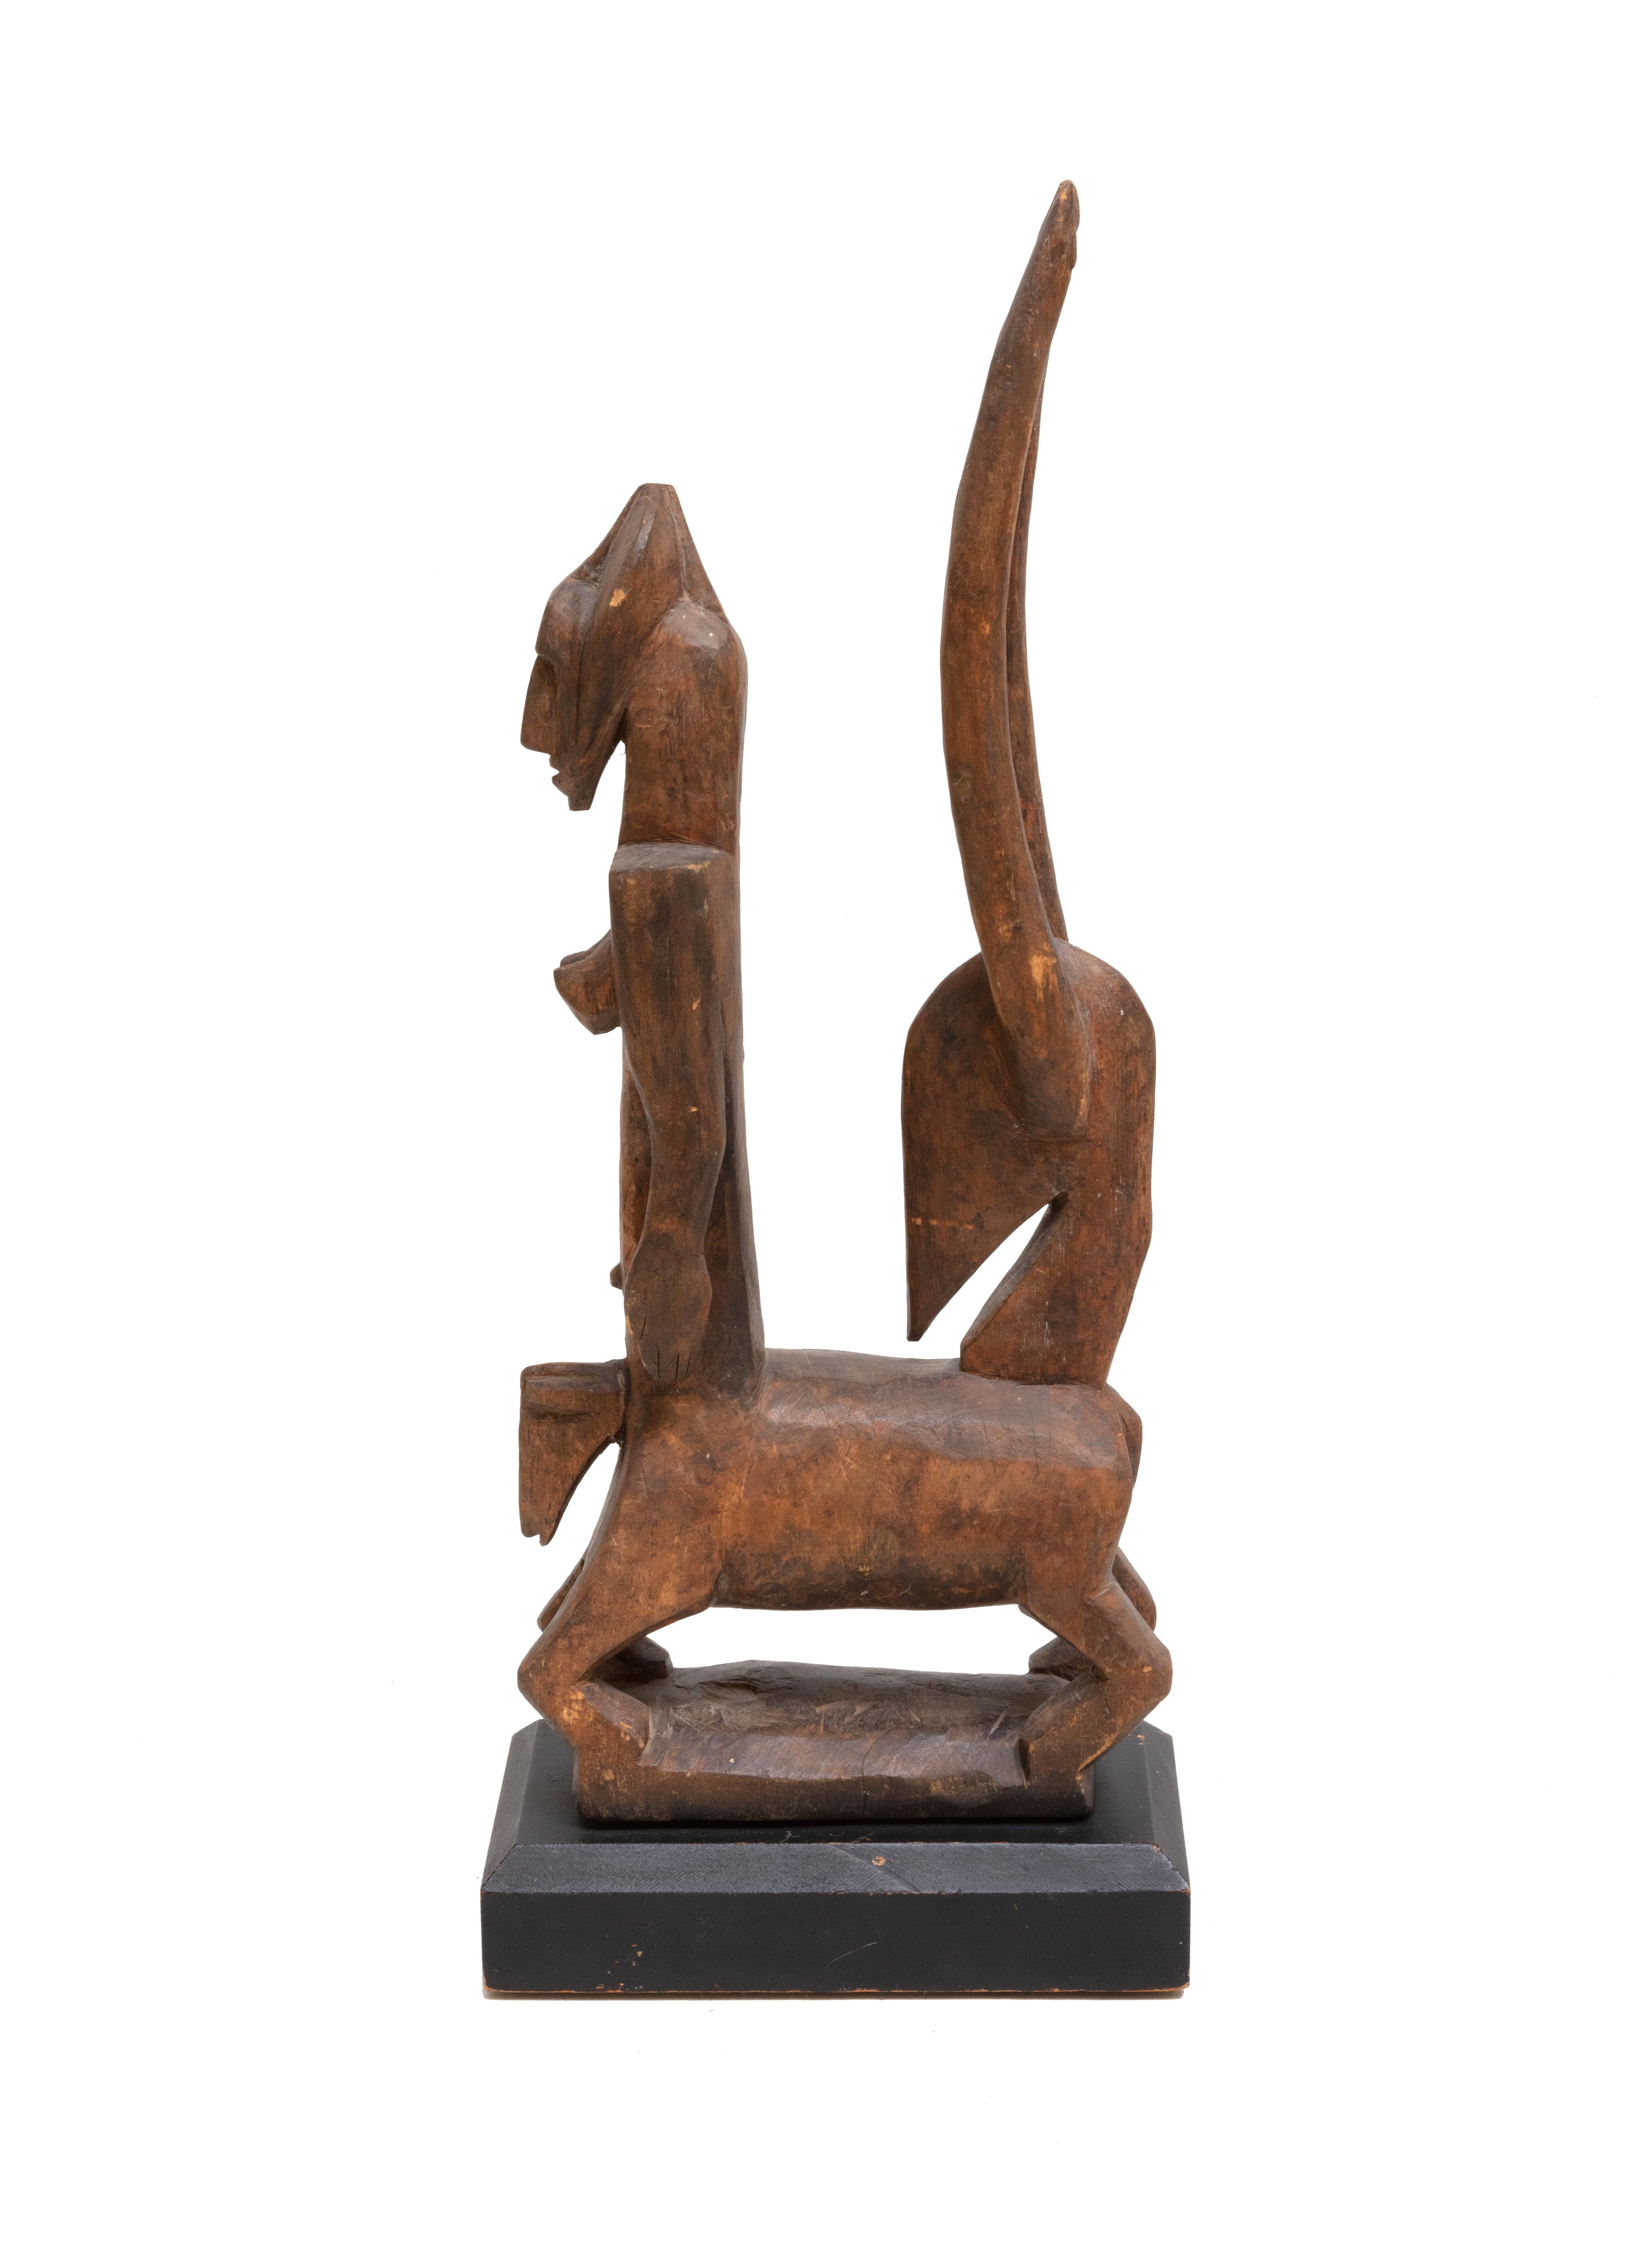 Unknown Figurative Sculpture - "Bambara Queen, Rep. Mali, " Wood created in Africa in c. 1940